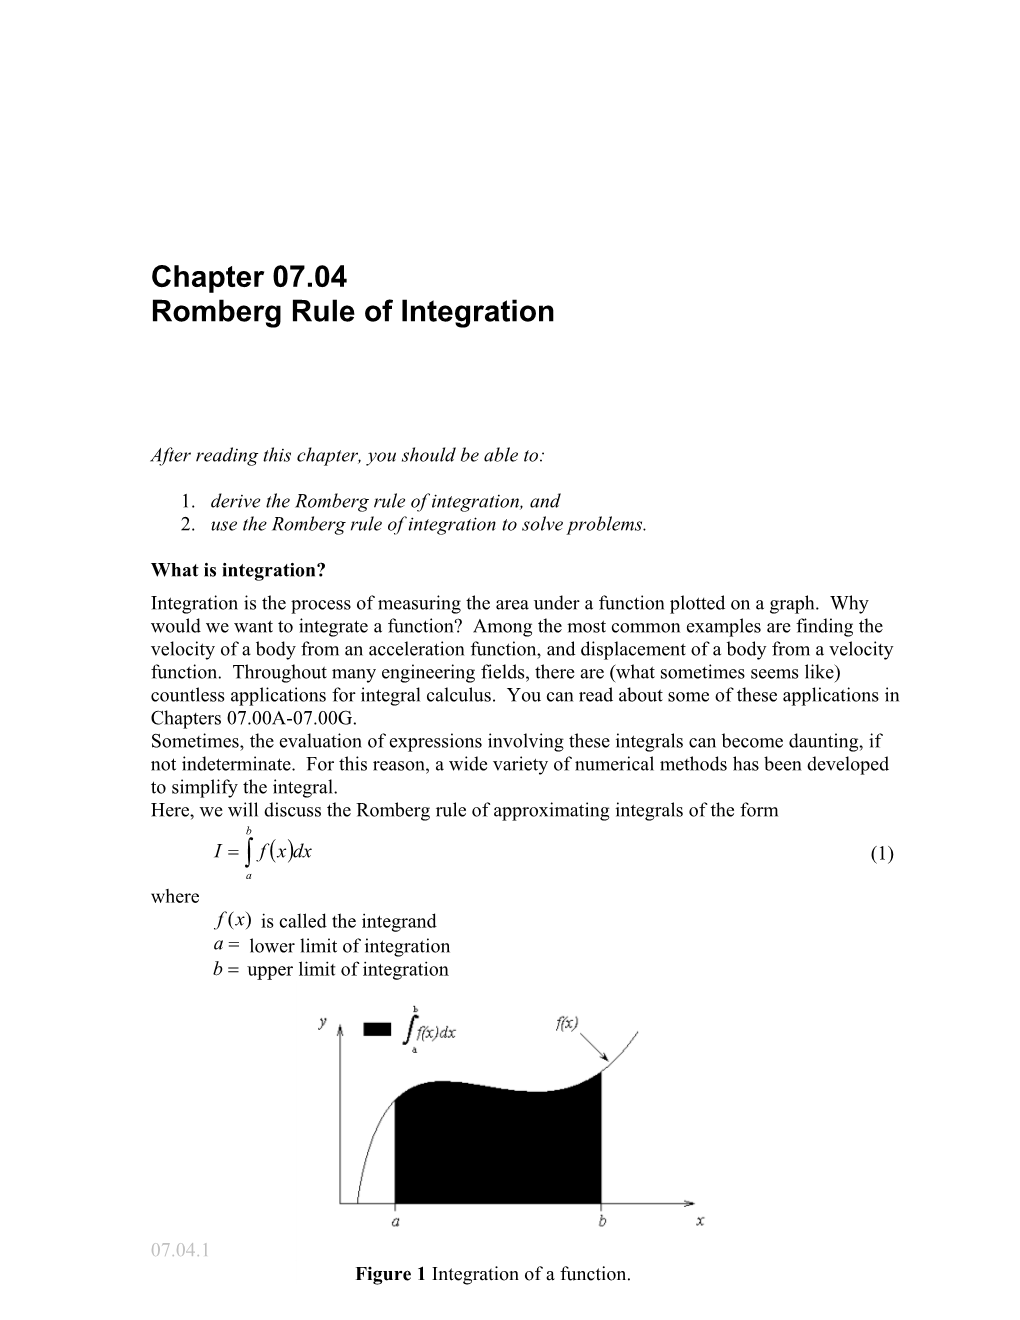 Romberg Rule of Integration: General Engineering